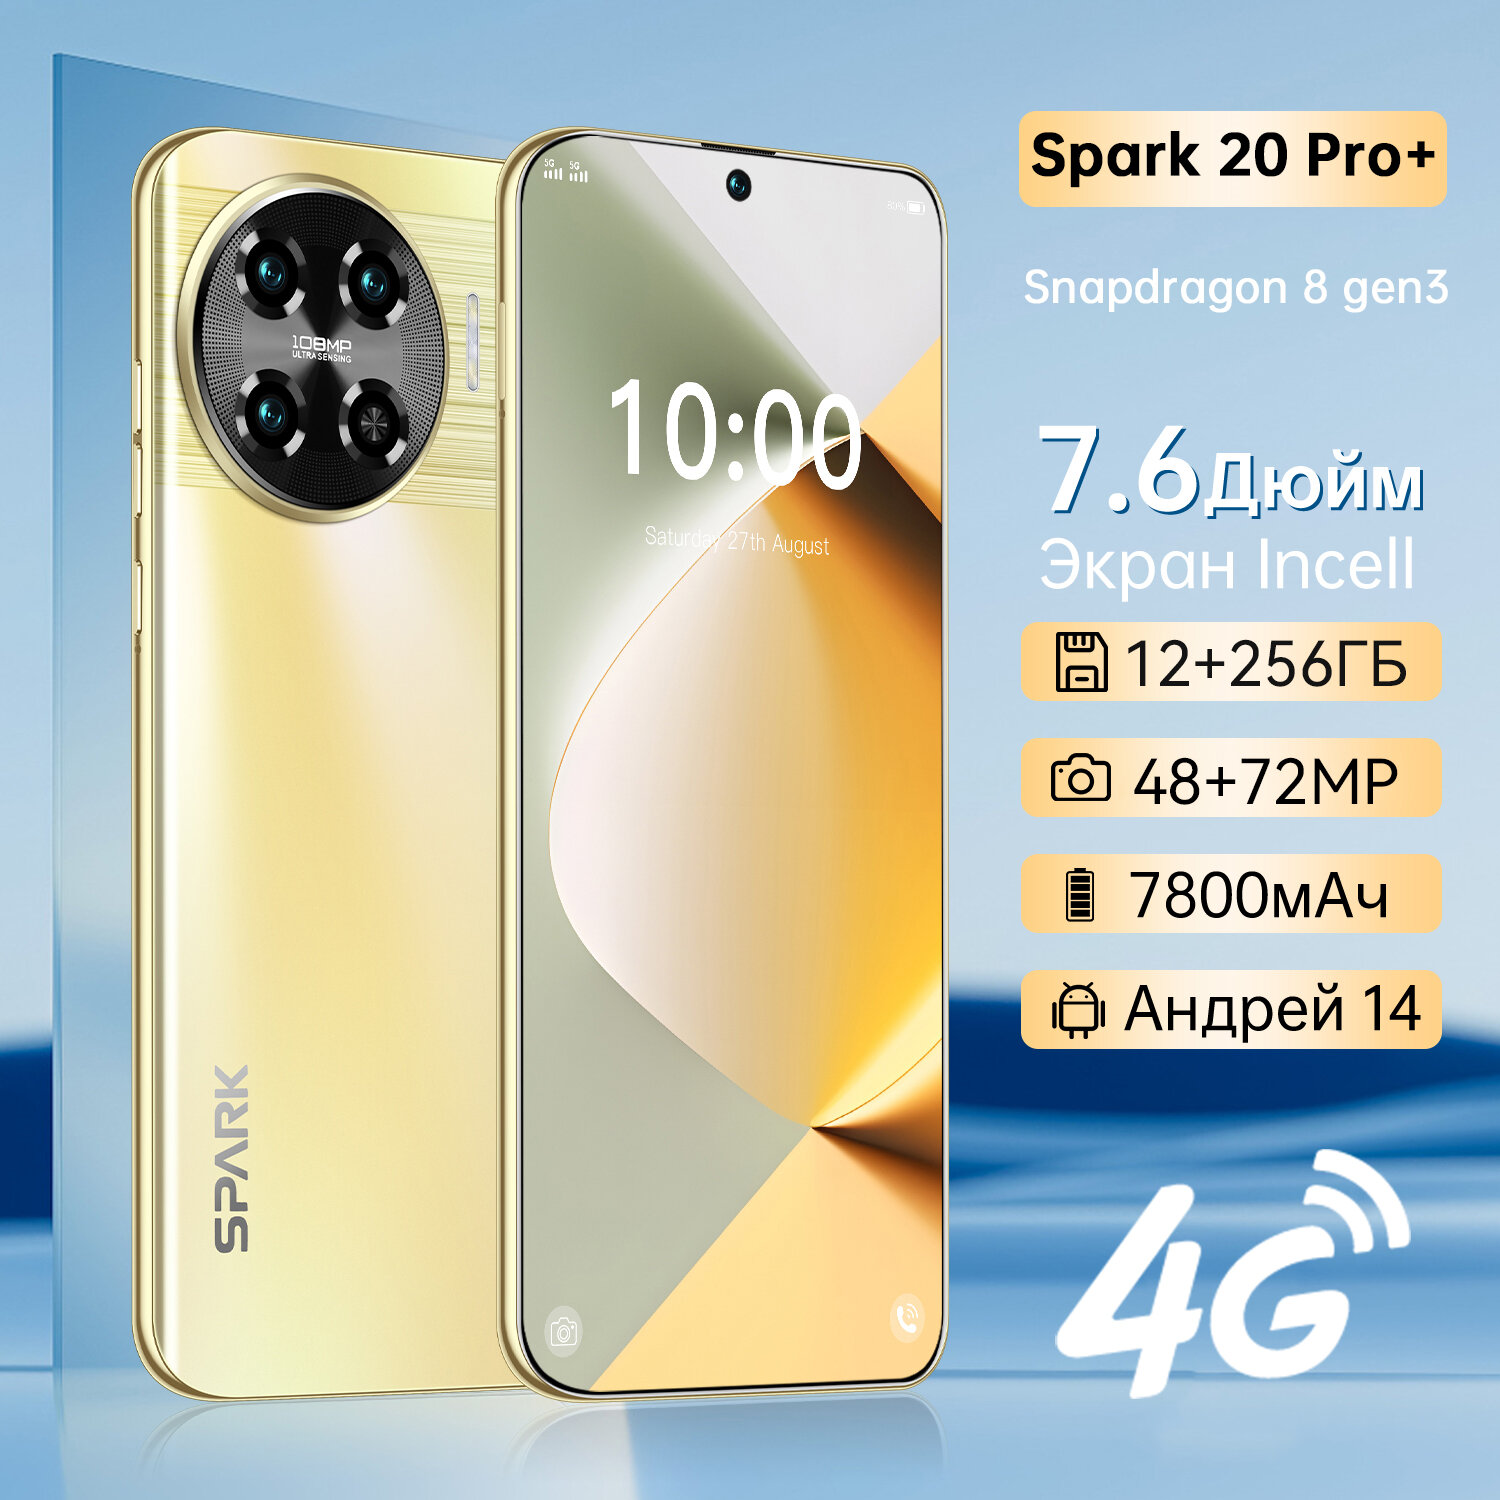 Cмартфон ZUNYI Spark 20 Pro + 4G с 7,6-дюймовым экраном ultimate edition поддерживает мобильные телефоны с поддержкой Google Play, игр и развлечений，12 Г + 256 г, золотой